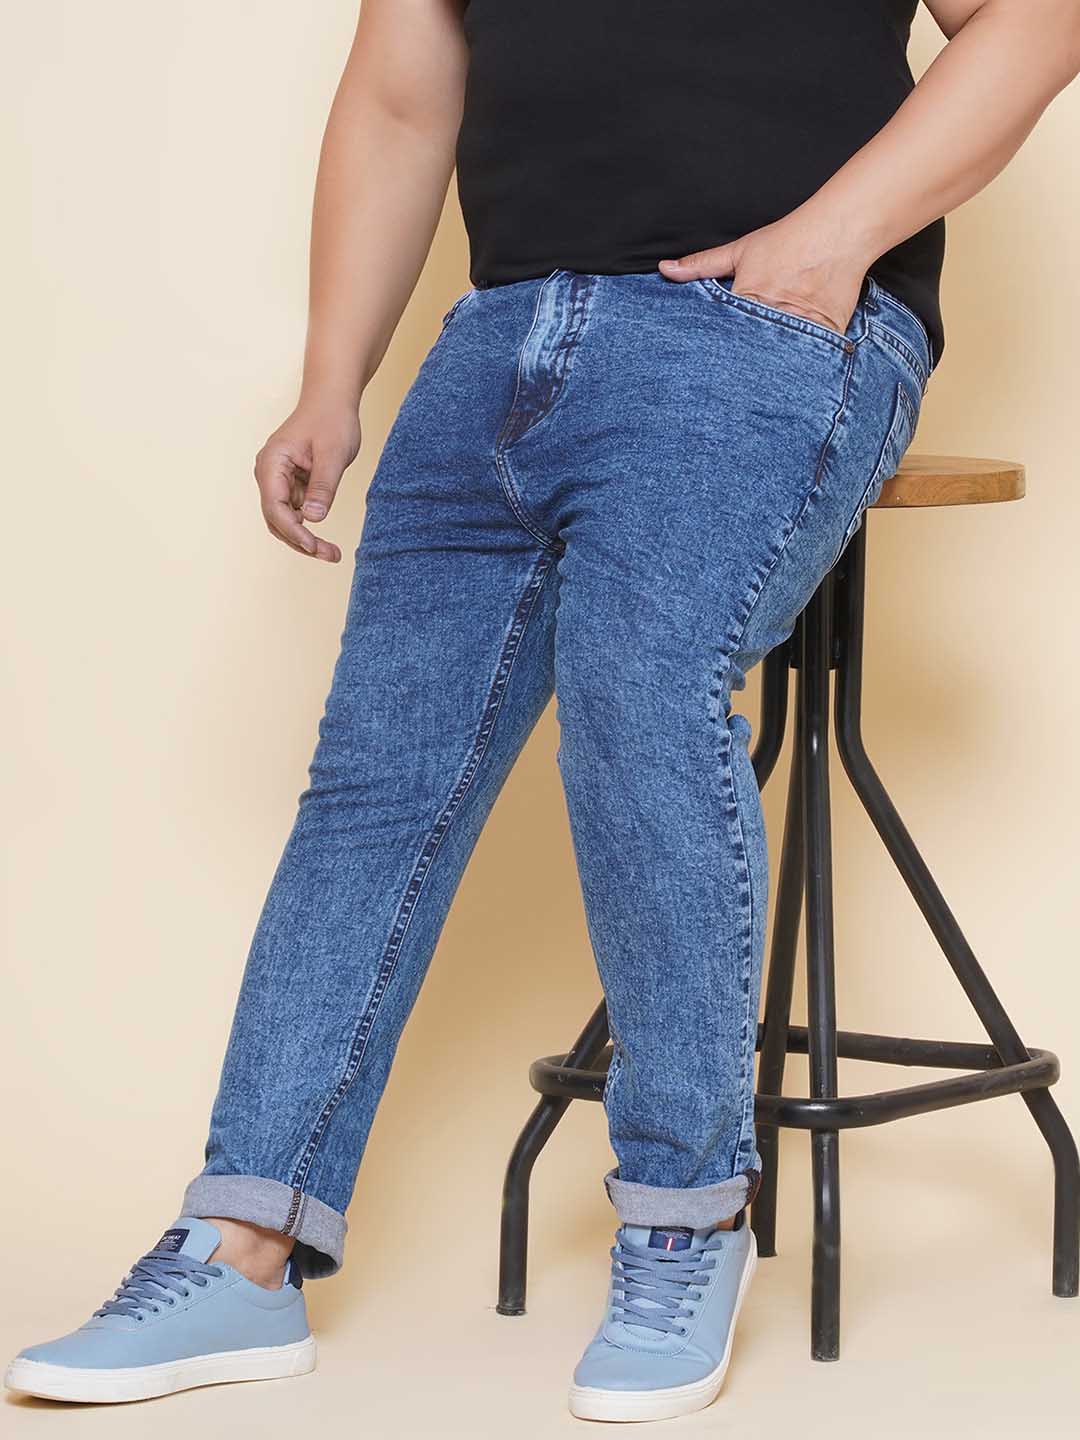 bottomwear/jeans/EJPJ25142/ejpj25142-1.jpg